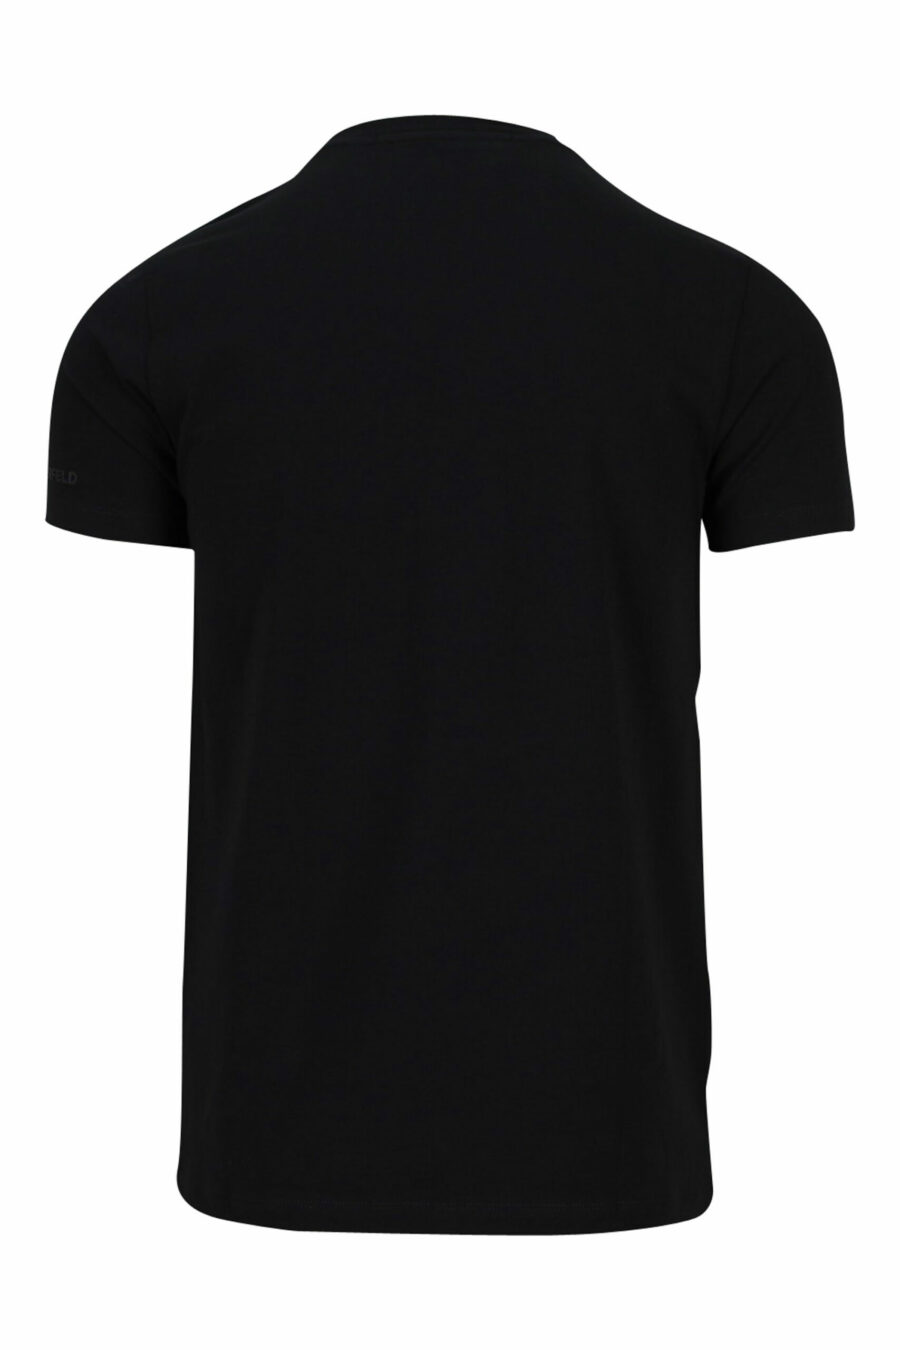 Camiseta negra con maxilogo monocromático de goma - 4062226401425 5 scaled